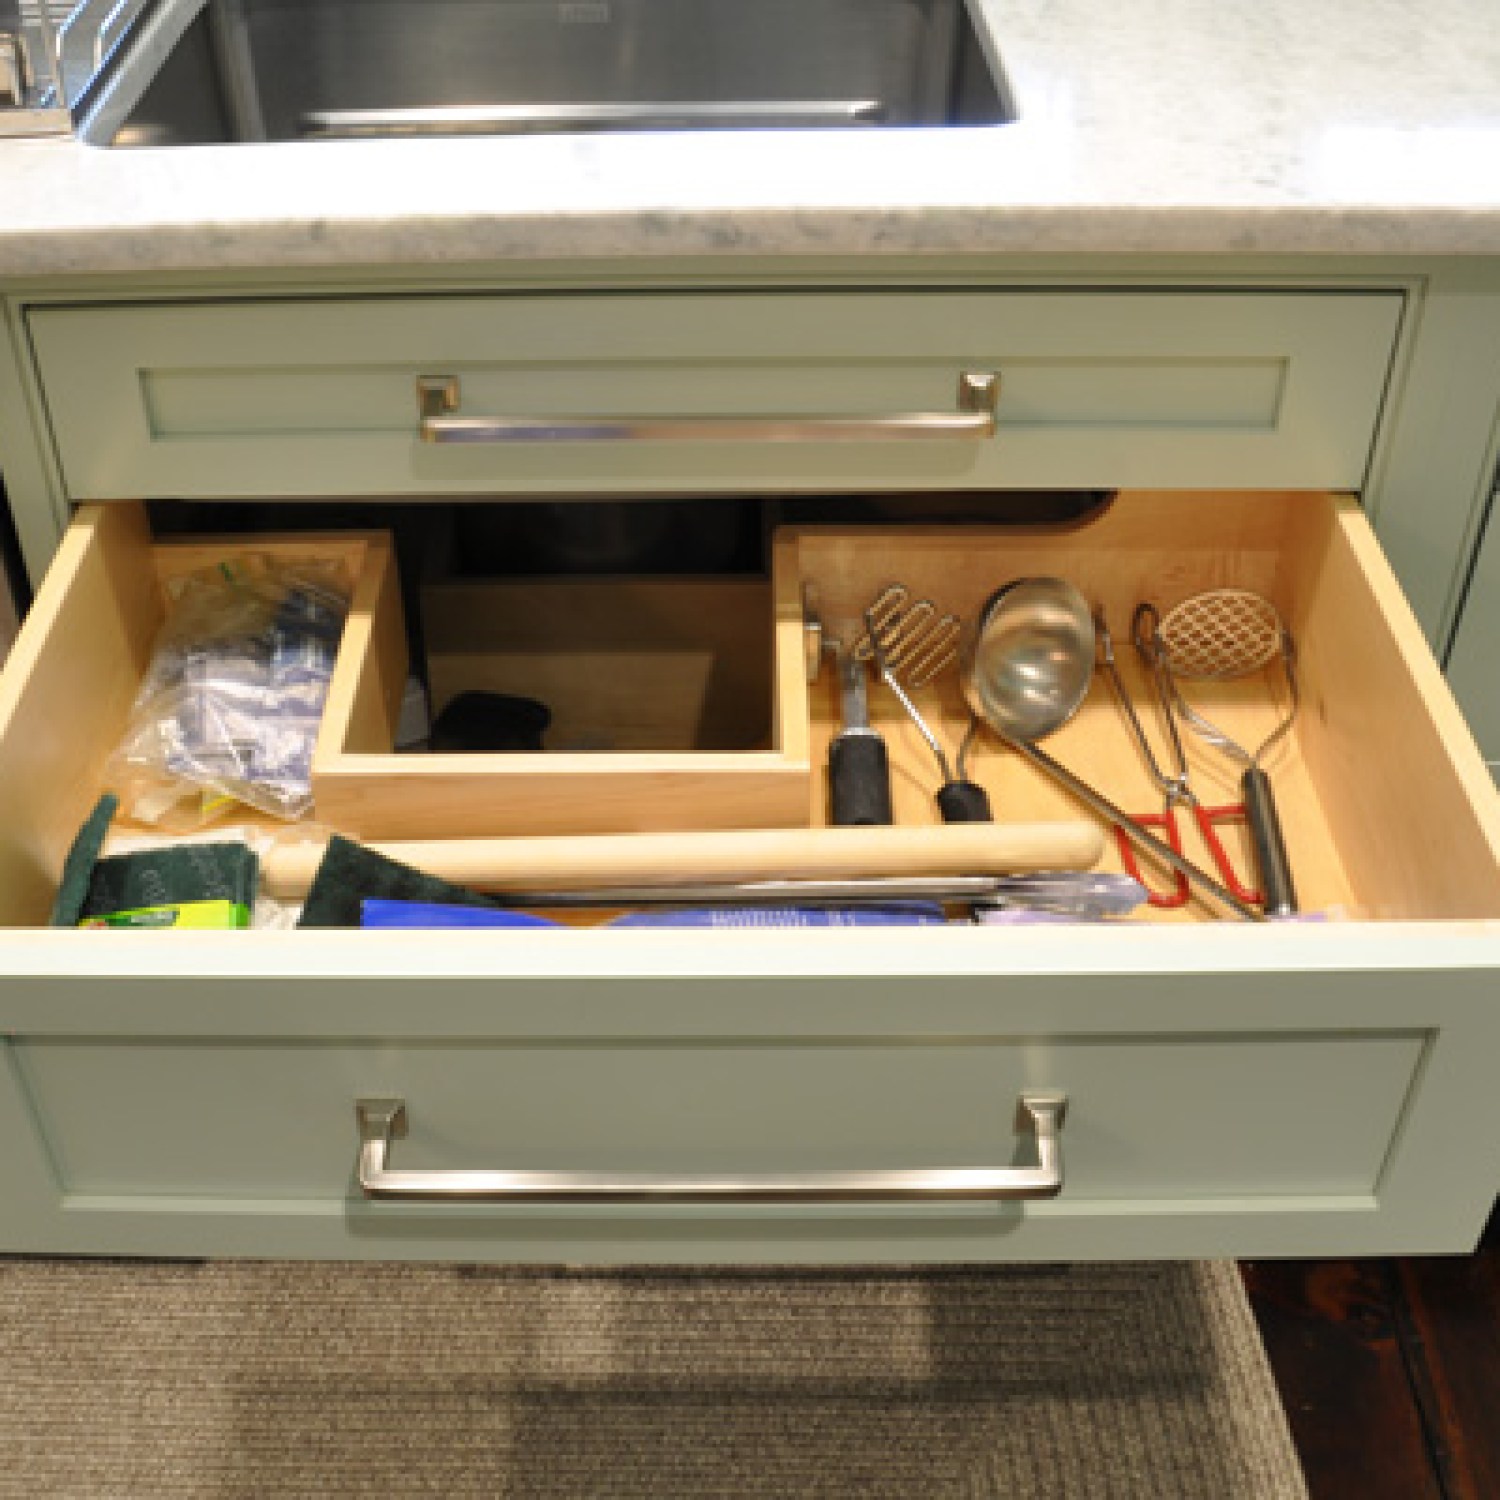 Under Sink Organizer Ideas Houselogic Storage And Organization Tips